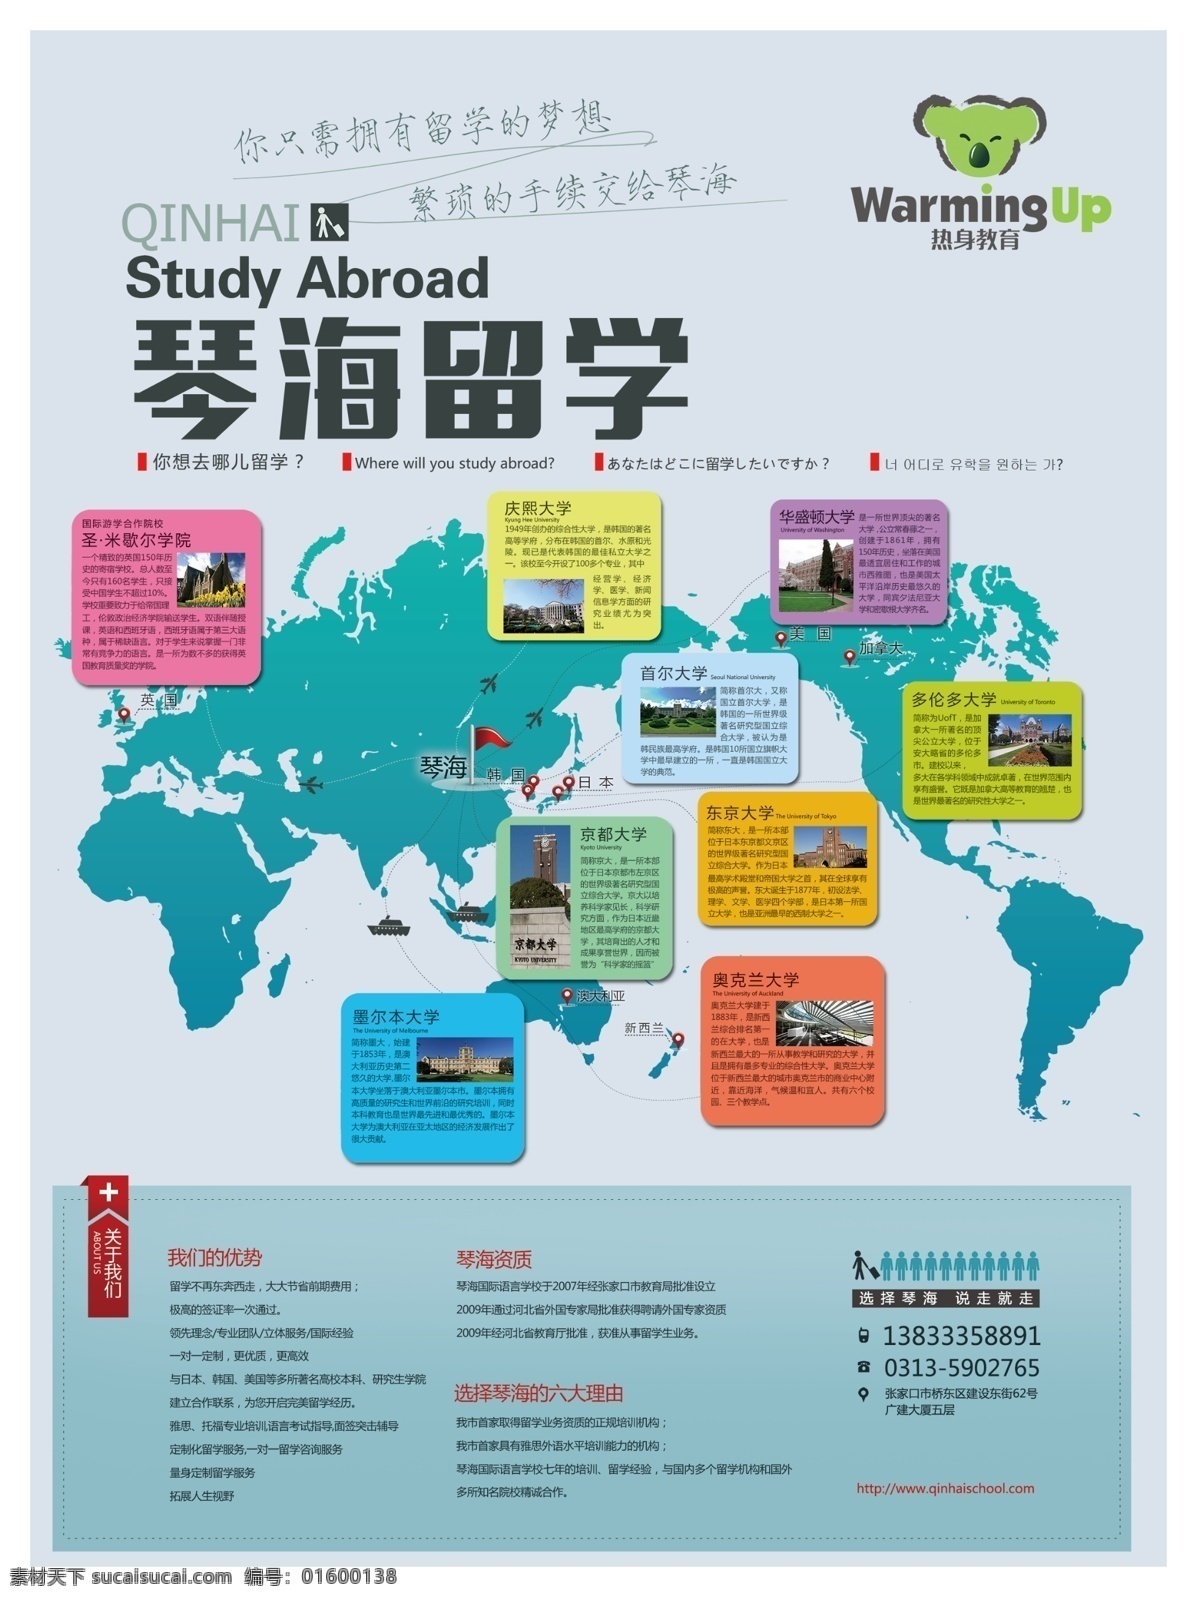 琴海留学 热身教育 留学海报 灰底海报 全球地形图 海报